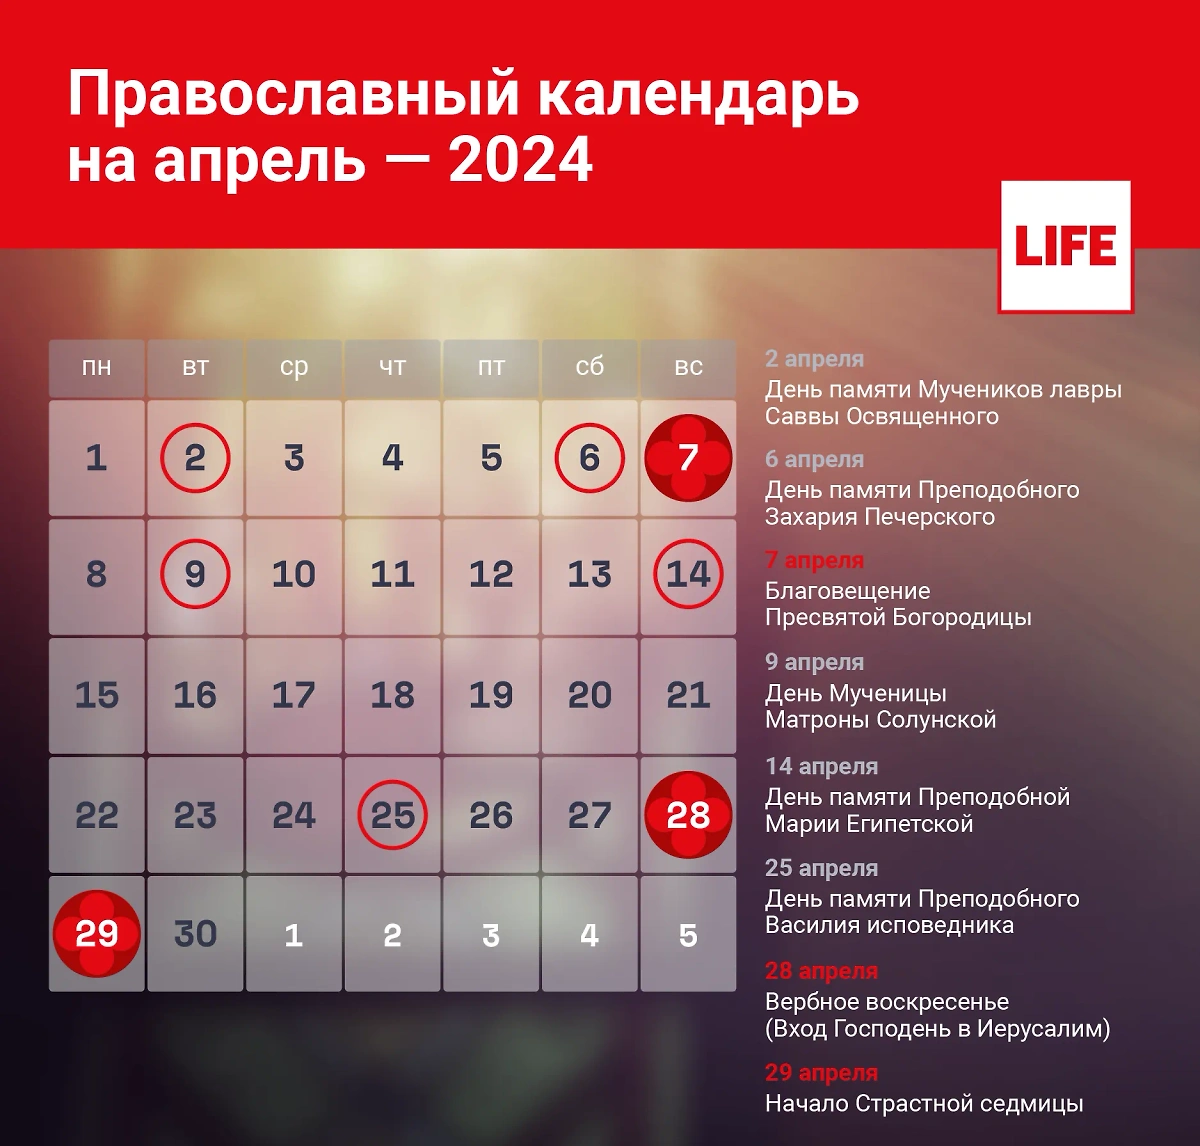 Какие церковные праздники отмечаются в апреле, подскажет православный календарь. Инфографика © Life.ru